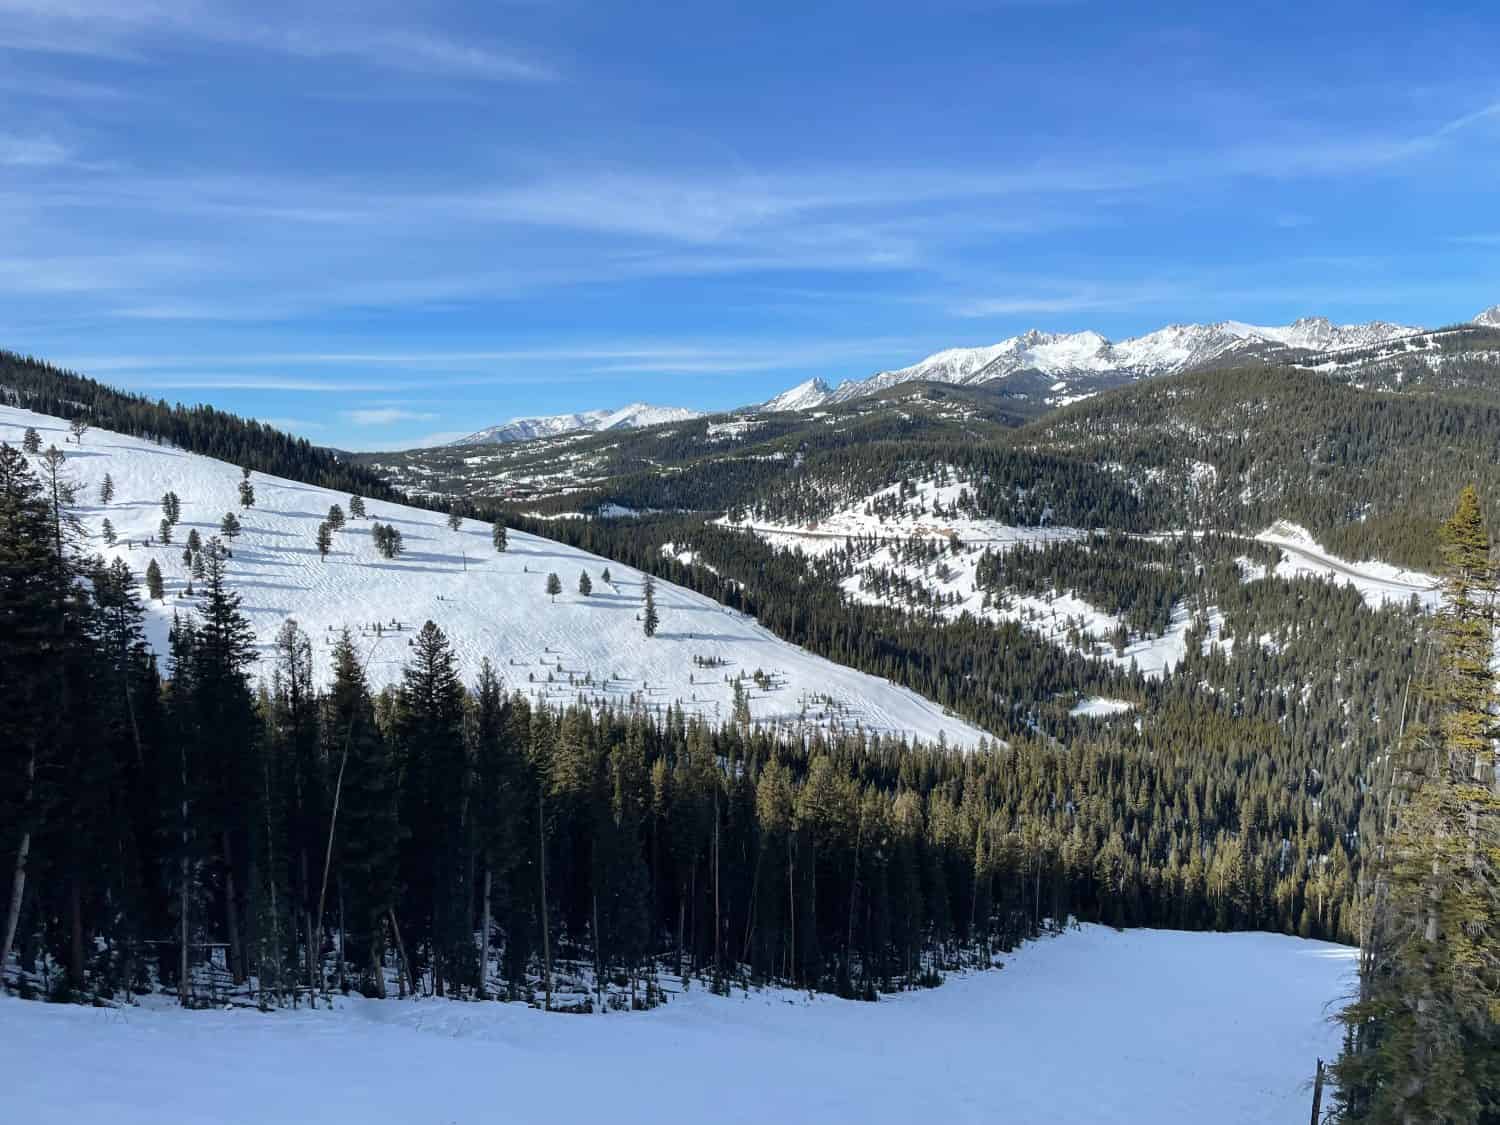 Vista panoramica delle cime e dei pendii innevati della stazione sciistica di Big Sky nel Montana in una soleggiata giornata invernale